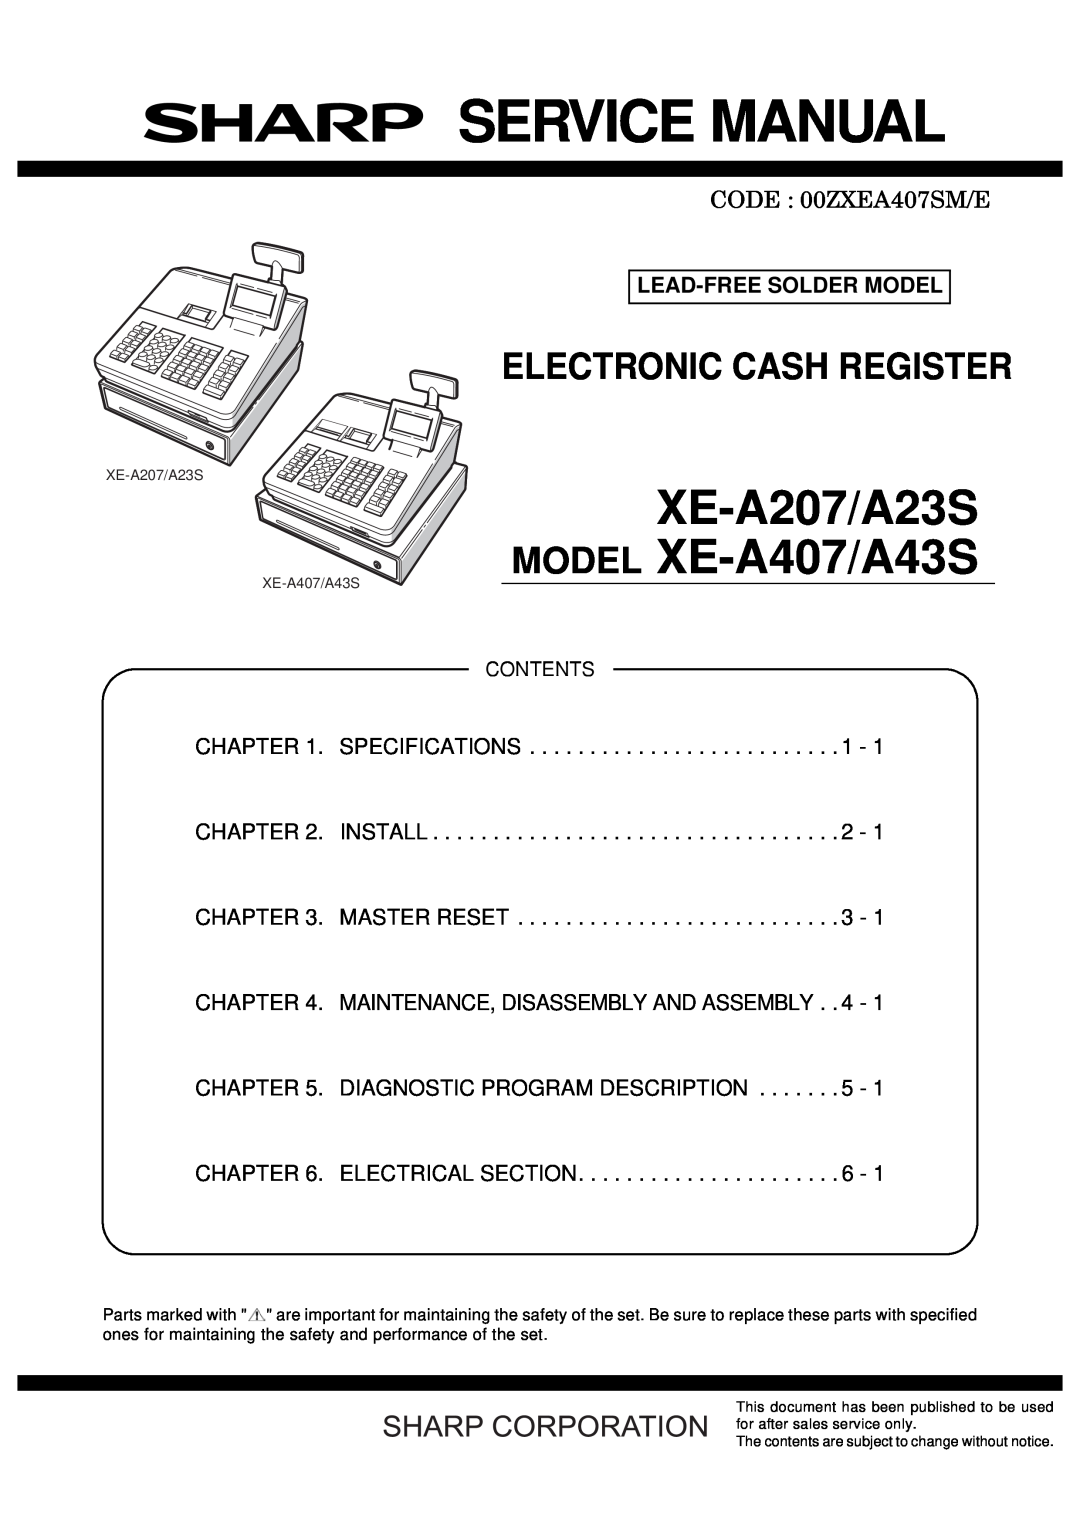 Sharp XEA407 instruction manual XE-A407 XE-A43S, Electronic Cash Register, Instruction Manual, Model 